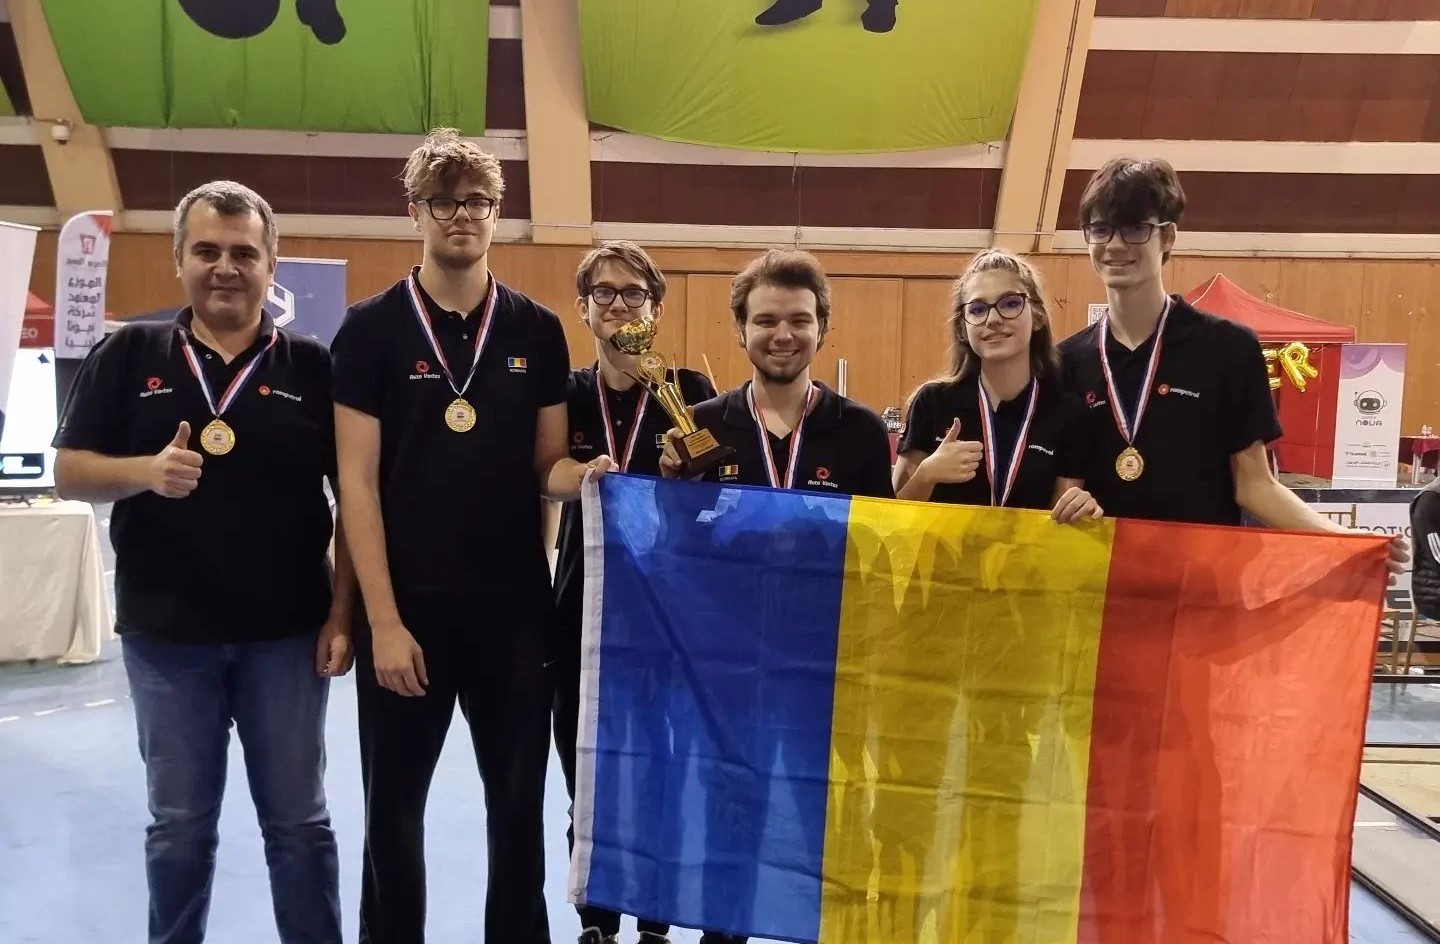 Au strălucit din nou! Echipa de robotică AutoVortex România a câștigat Locul 1 la Campionatul Internațional din Libia